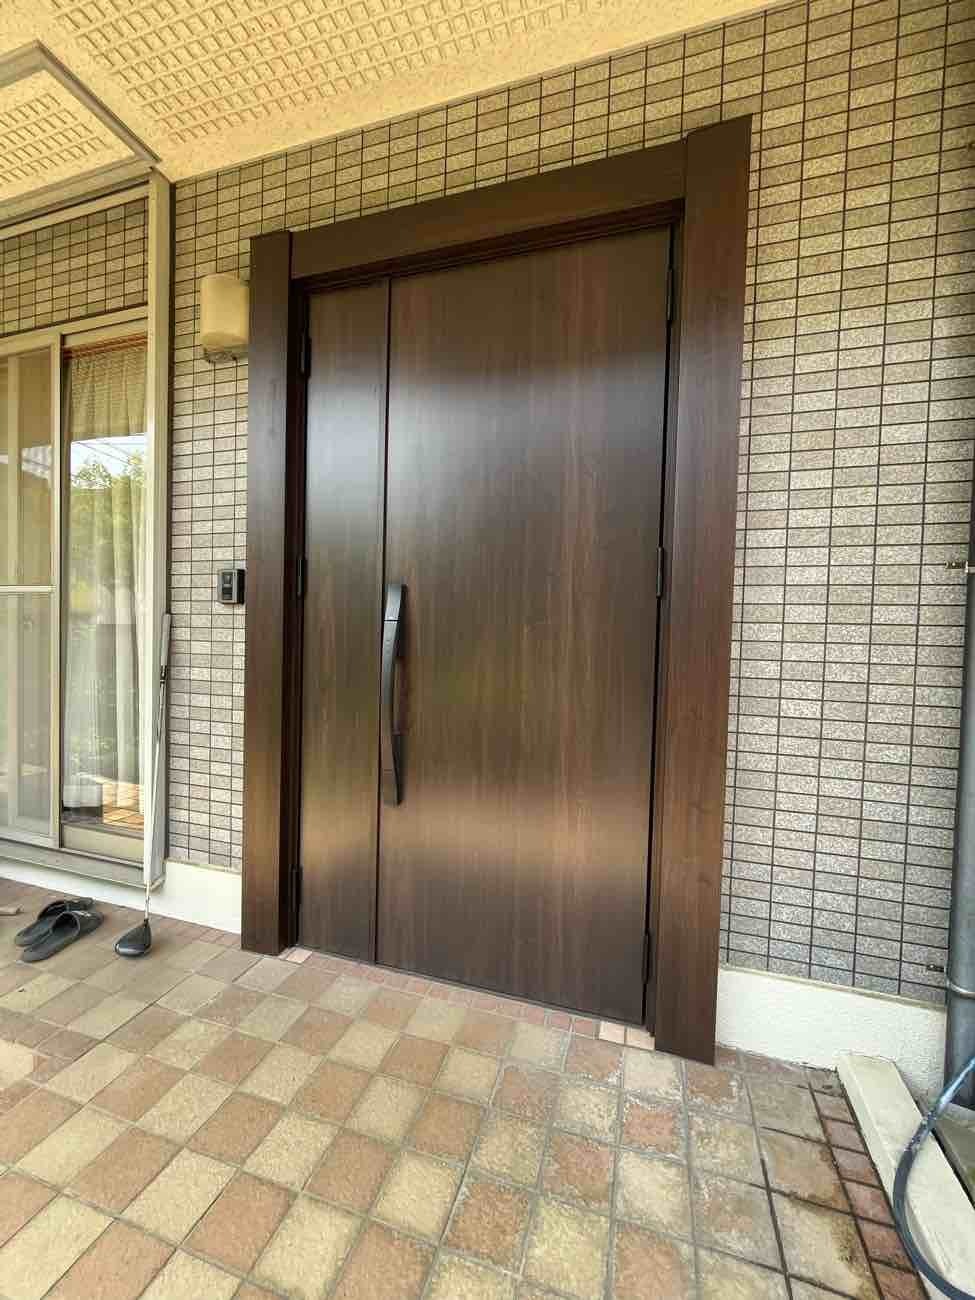 【東京都足立区】F様邸玄関ドア交換工事が完了しました。LIXILリシェント 左勝手 画像